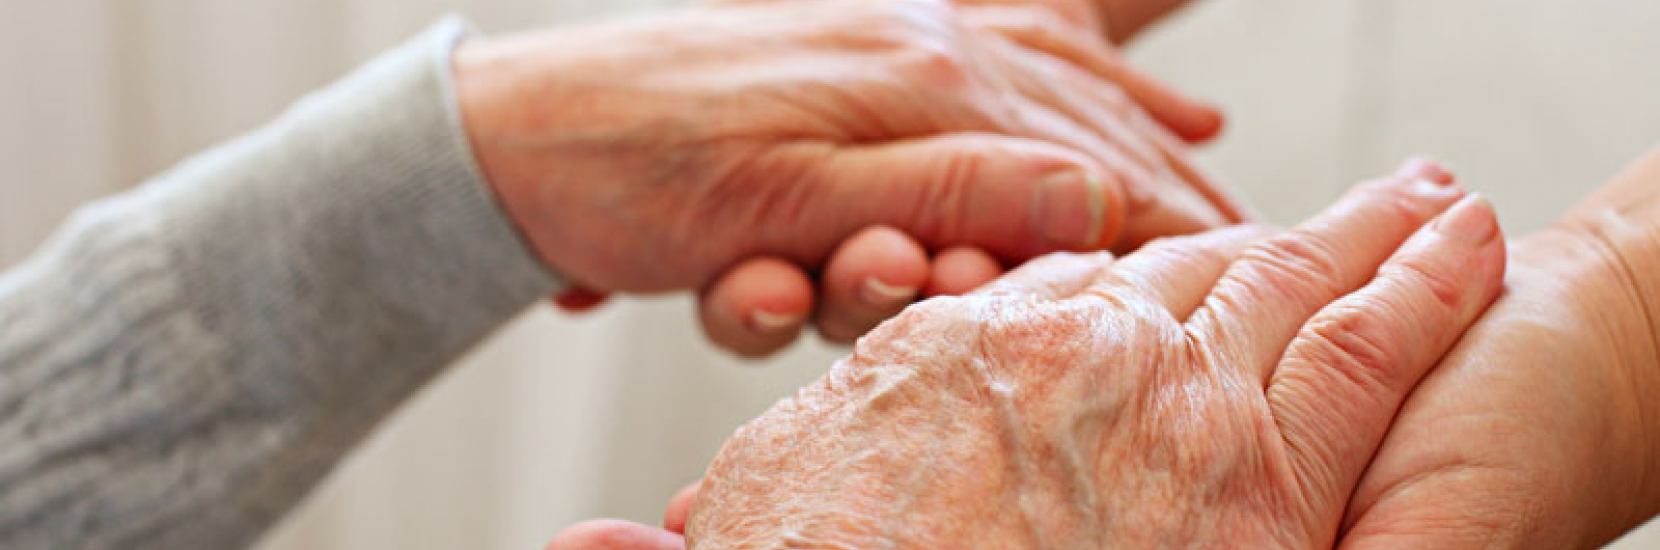 Dépister et prévenir la fragilité chez la personne âgée, une priorité au CHL